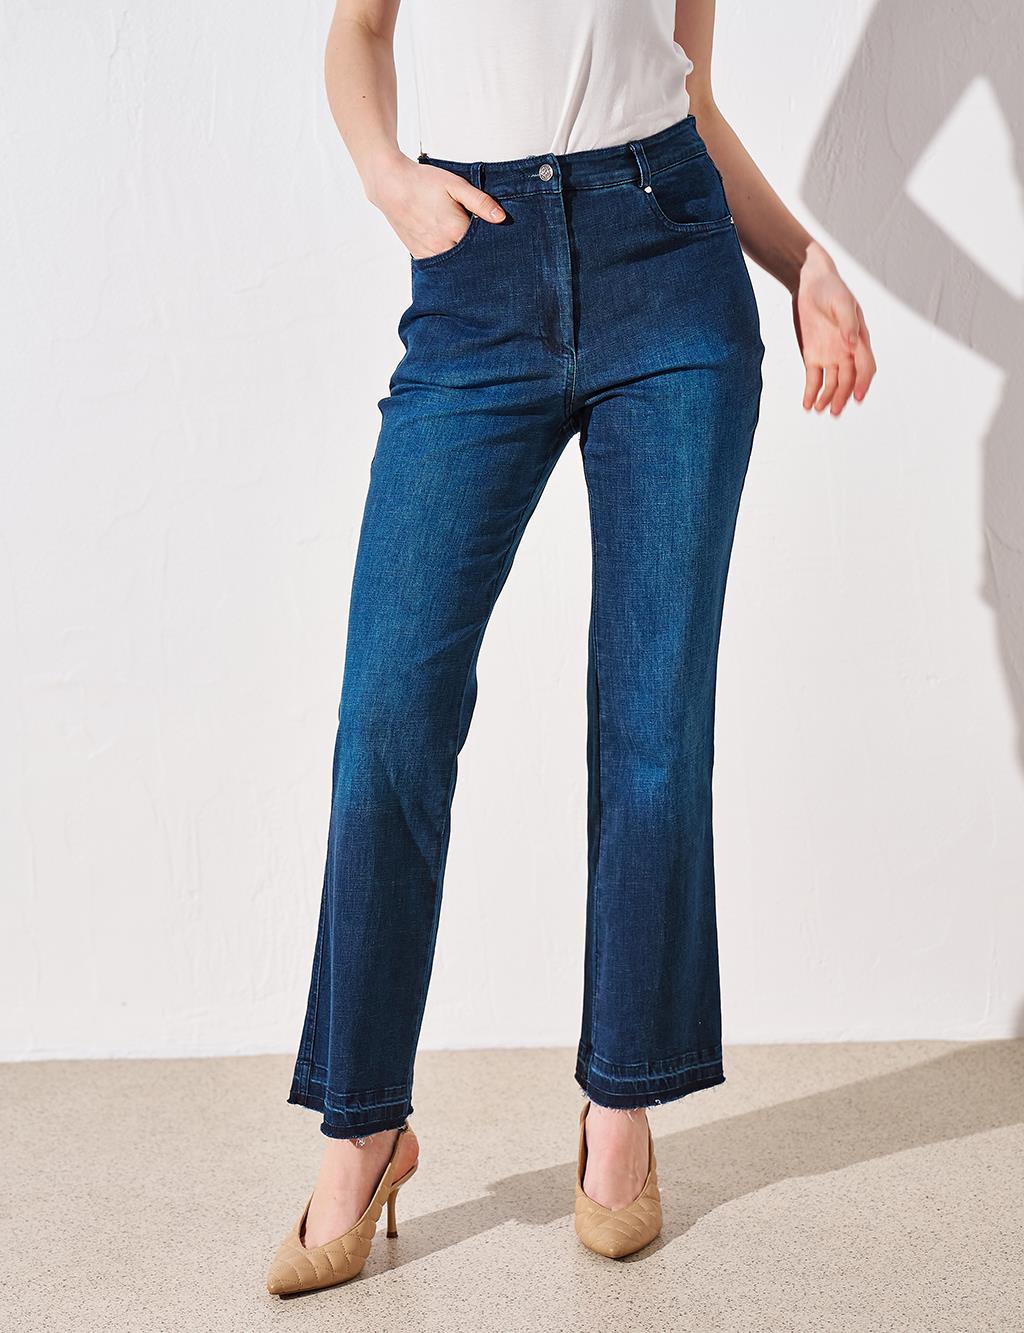 Джинсовые брюки с высокой талией, темно-синие Kayra широкие джинсовые брюки с высокой талией темно синие kayra